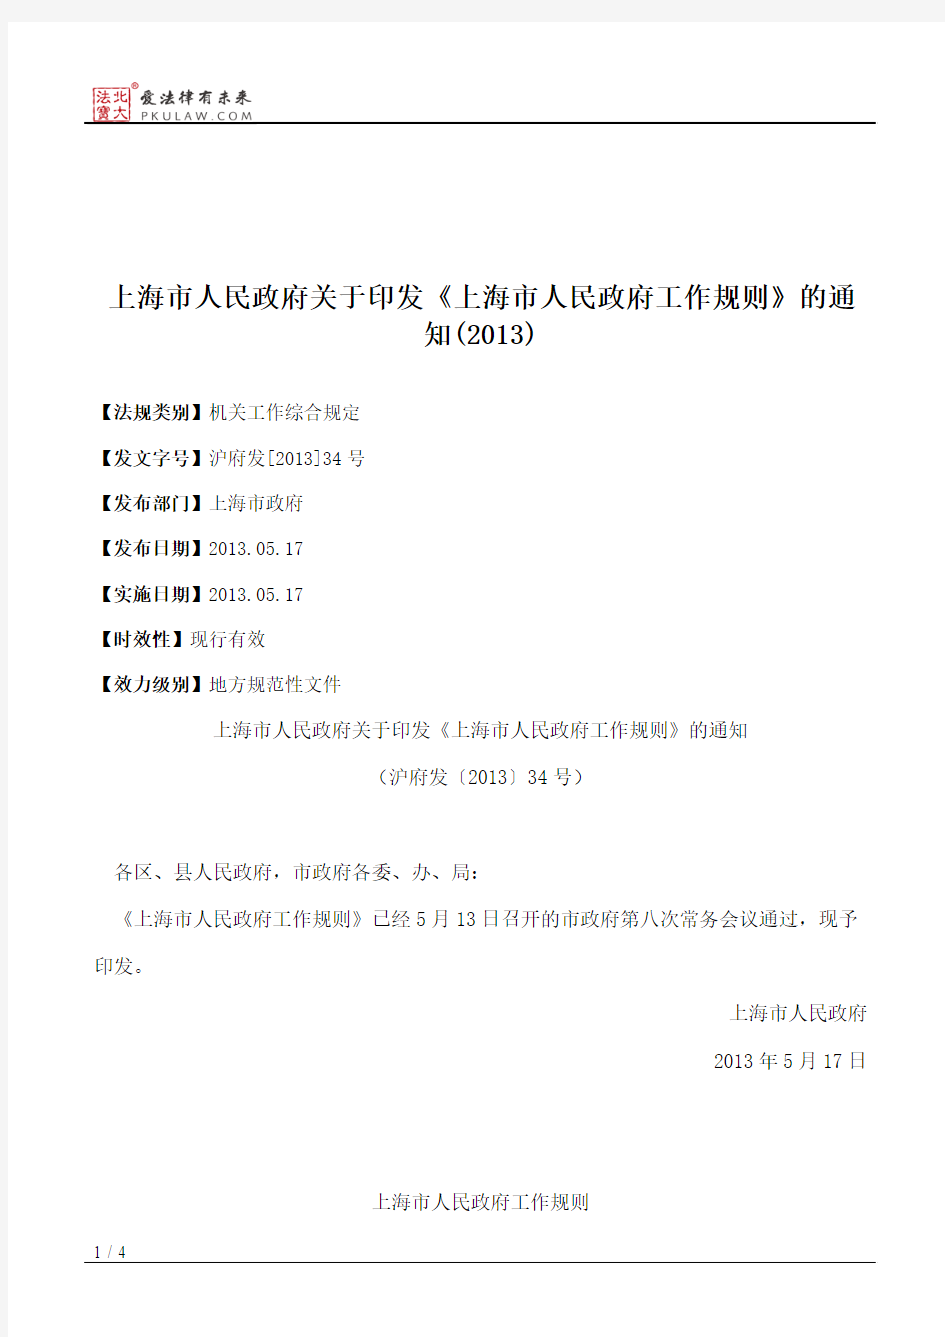 上海市人民政府关于印发《上海市人民政府工作规则》的通知(2013)